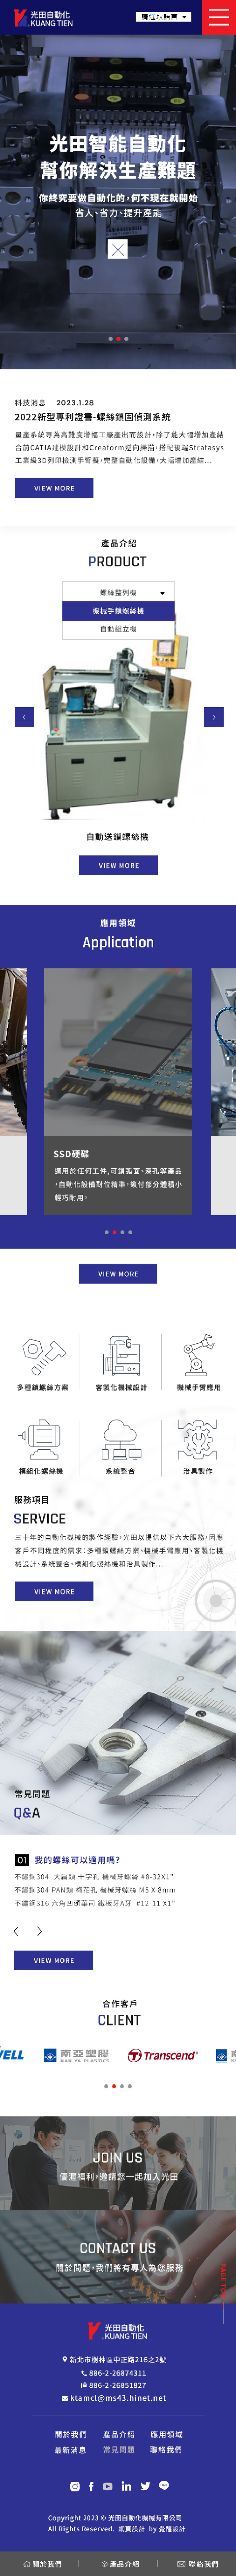 光田自動化機械有限公司-首頁手機版網站客製化設計-覺醒網頁計服務